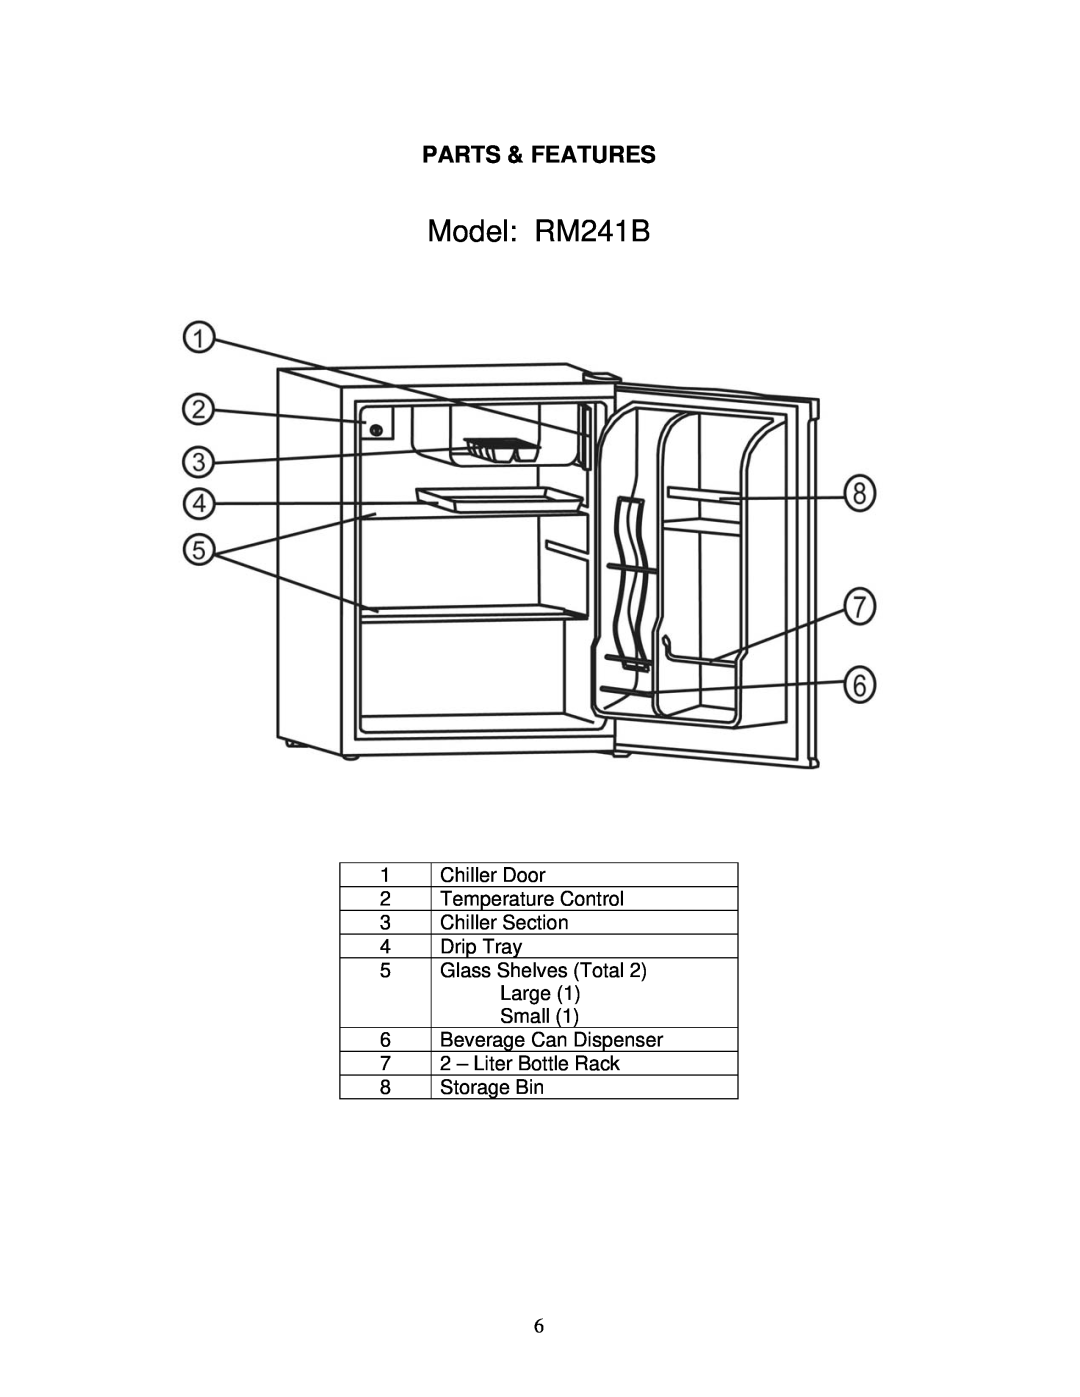 Avanti BCA244B instruction manual Parts & Features, Model RM241B 